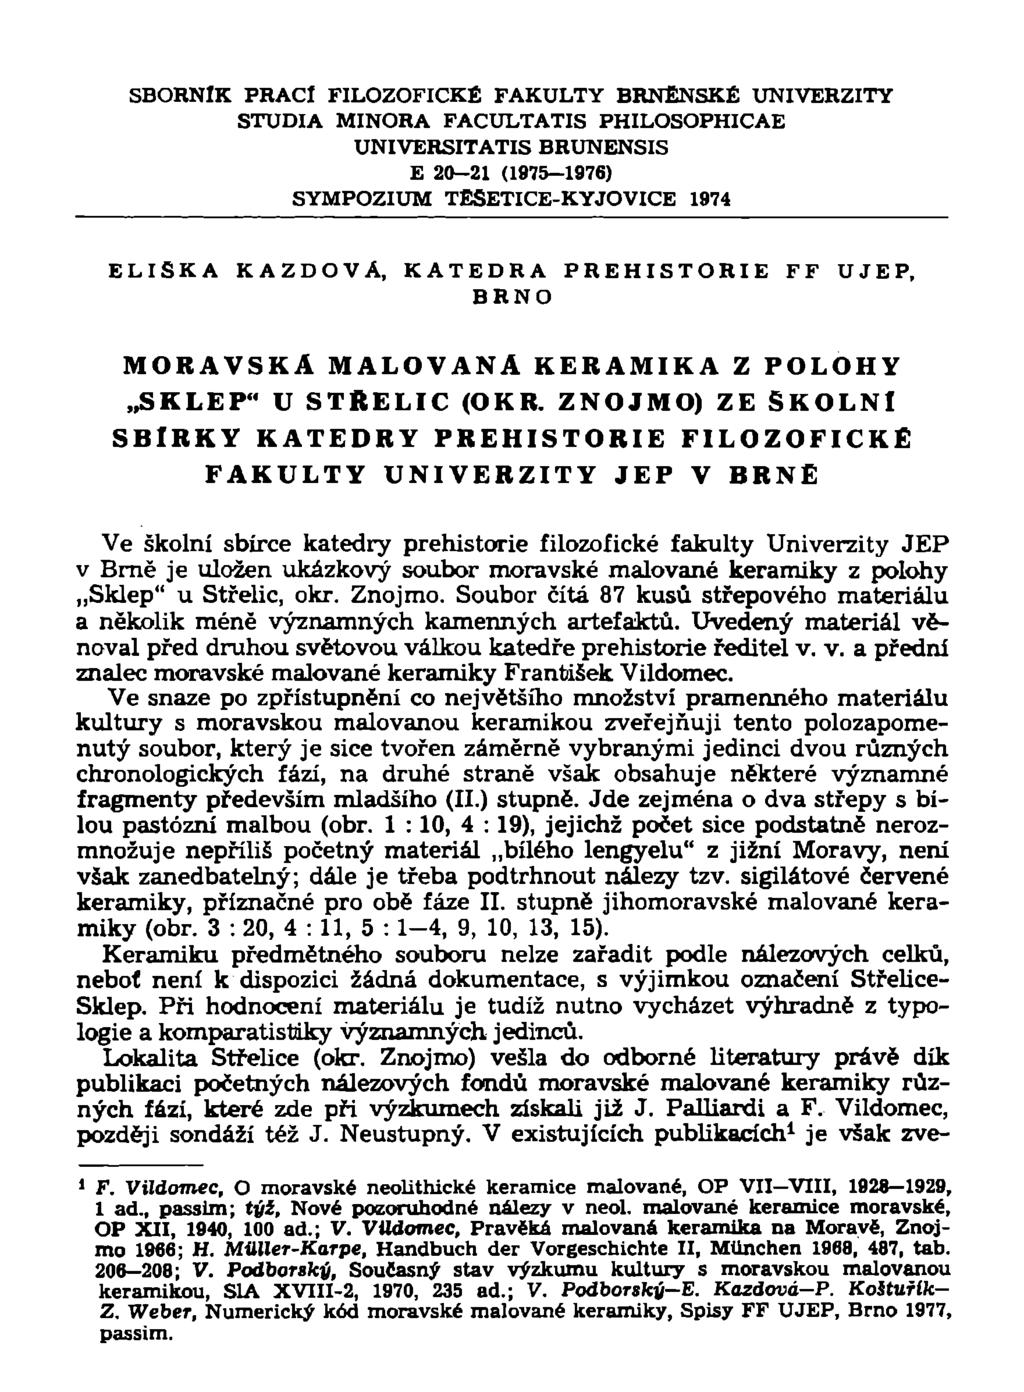 SBORNÍK PRACÍ FILOZOFICKÉ FAKULTY BRNĚNSKÉ UNIVERZITY STUDIA MINORA FACULTATIS PHILOSOPHICAE UNIVERSITATIS BRUNENSIS E 20-21 (1975-1976) SYMPOZIUM TESETICE-KYJOVICE 1974 ELIŠKA KAZDOVA, KATEDRA